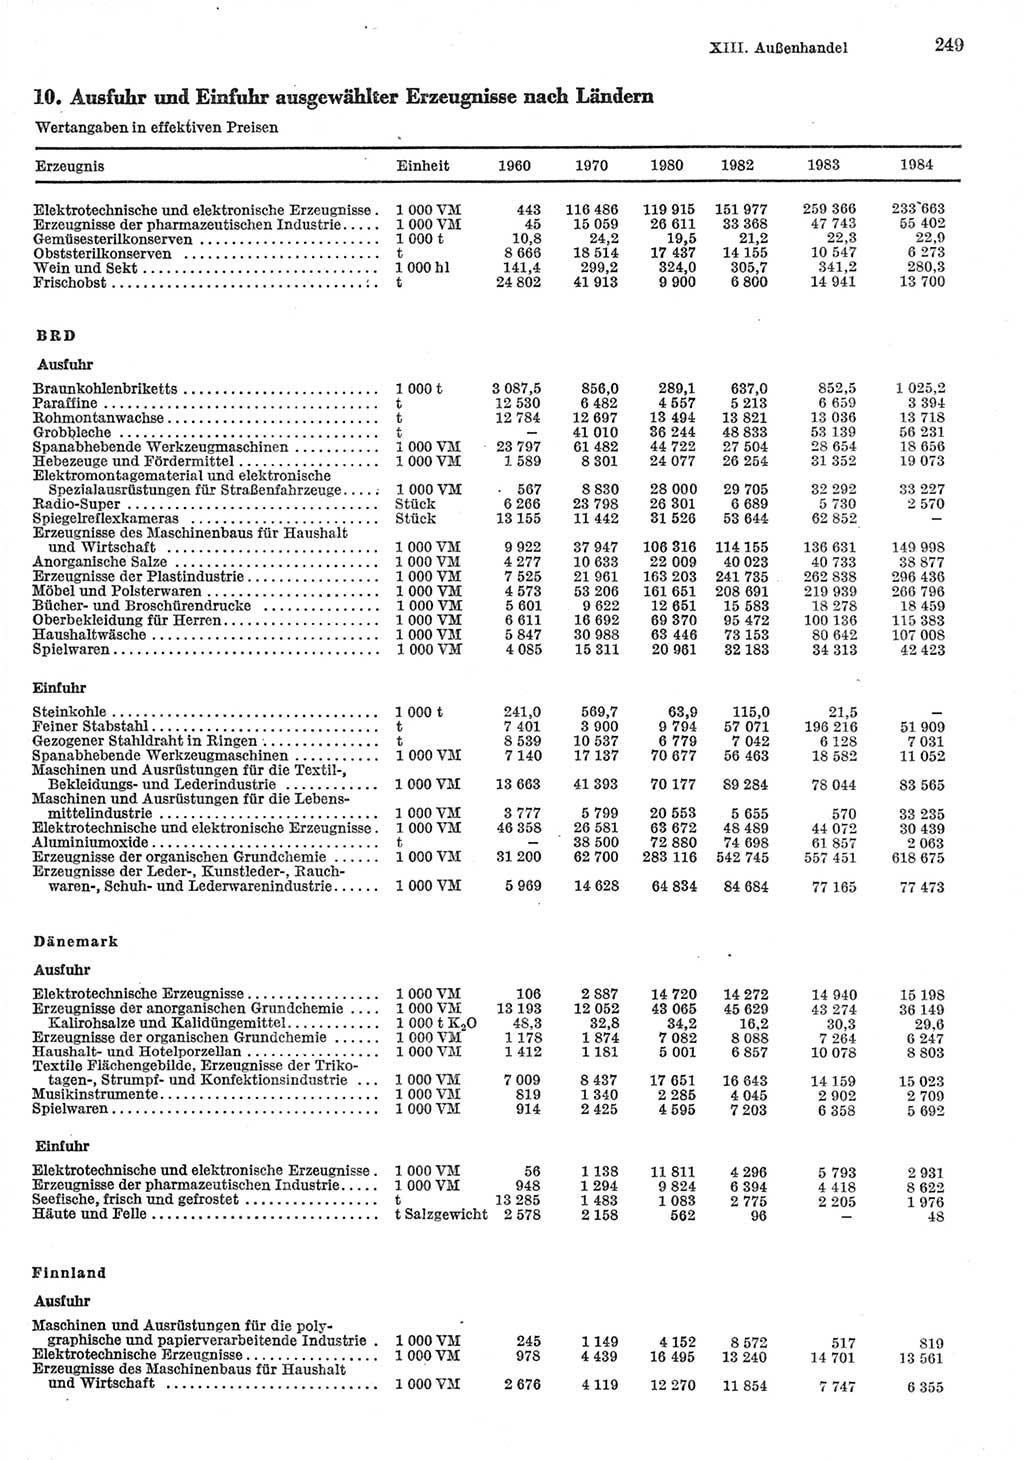 Statistisches Jahrbuch der Deutschen Demokratischen Republik (DDR) 1985, Seite 249 (Stat. Jb. DDR 1985, S. 249)